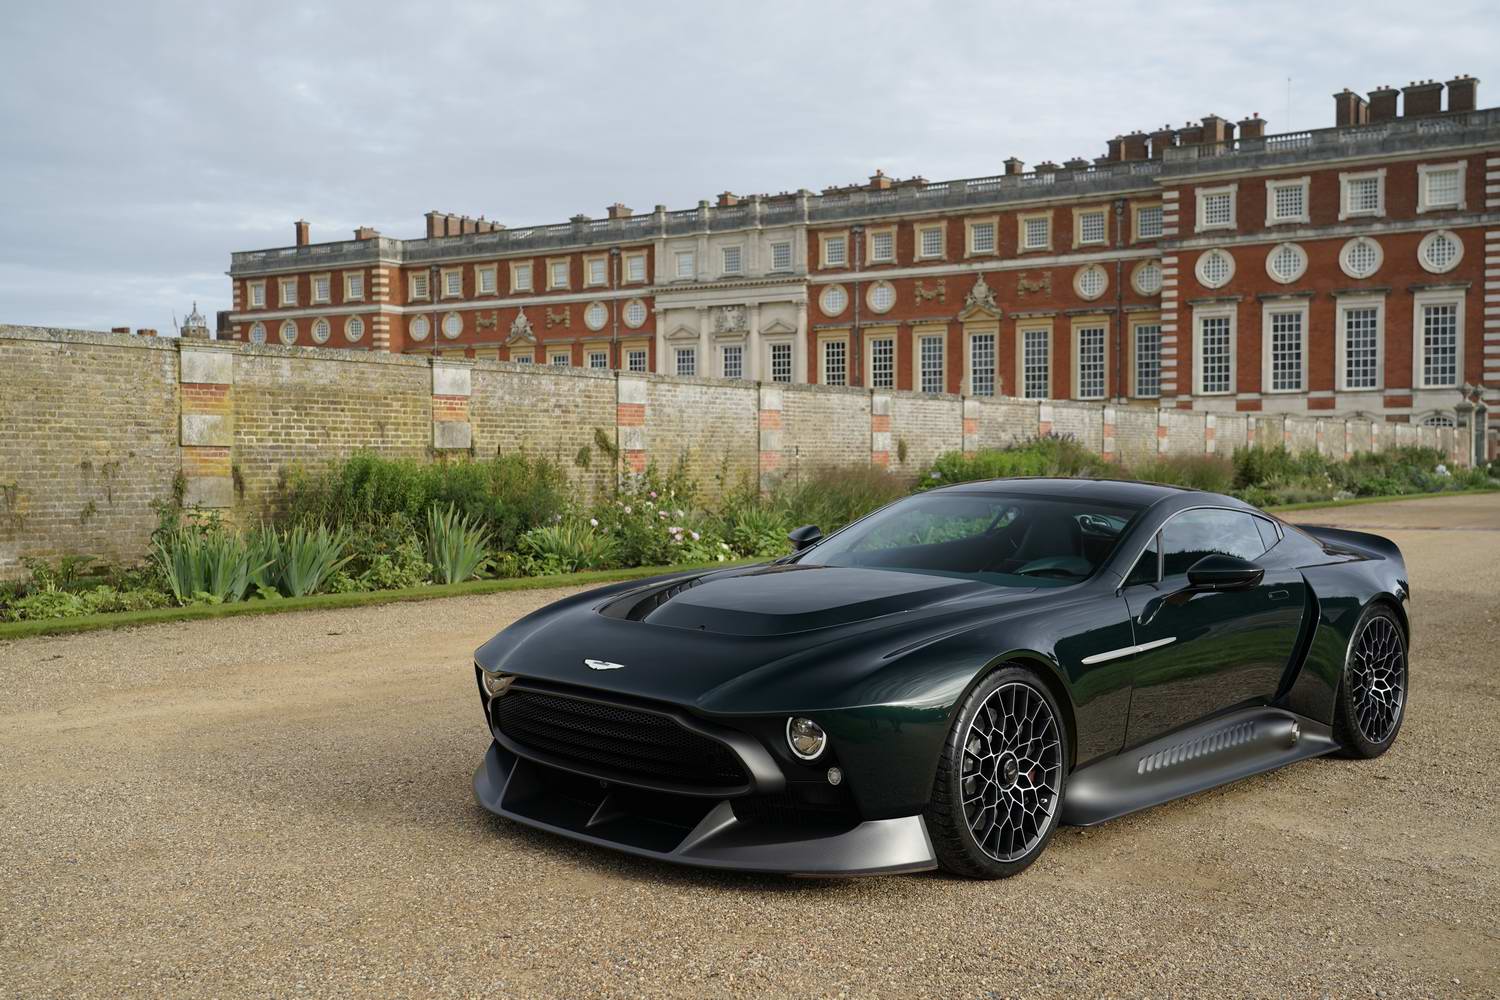 The Future Of Luxury: 2020 Aston Martin Victor